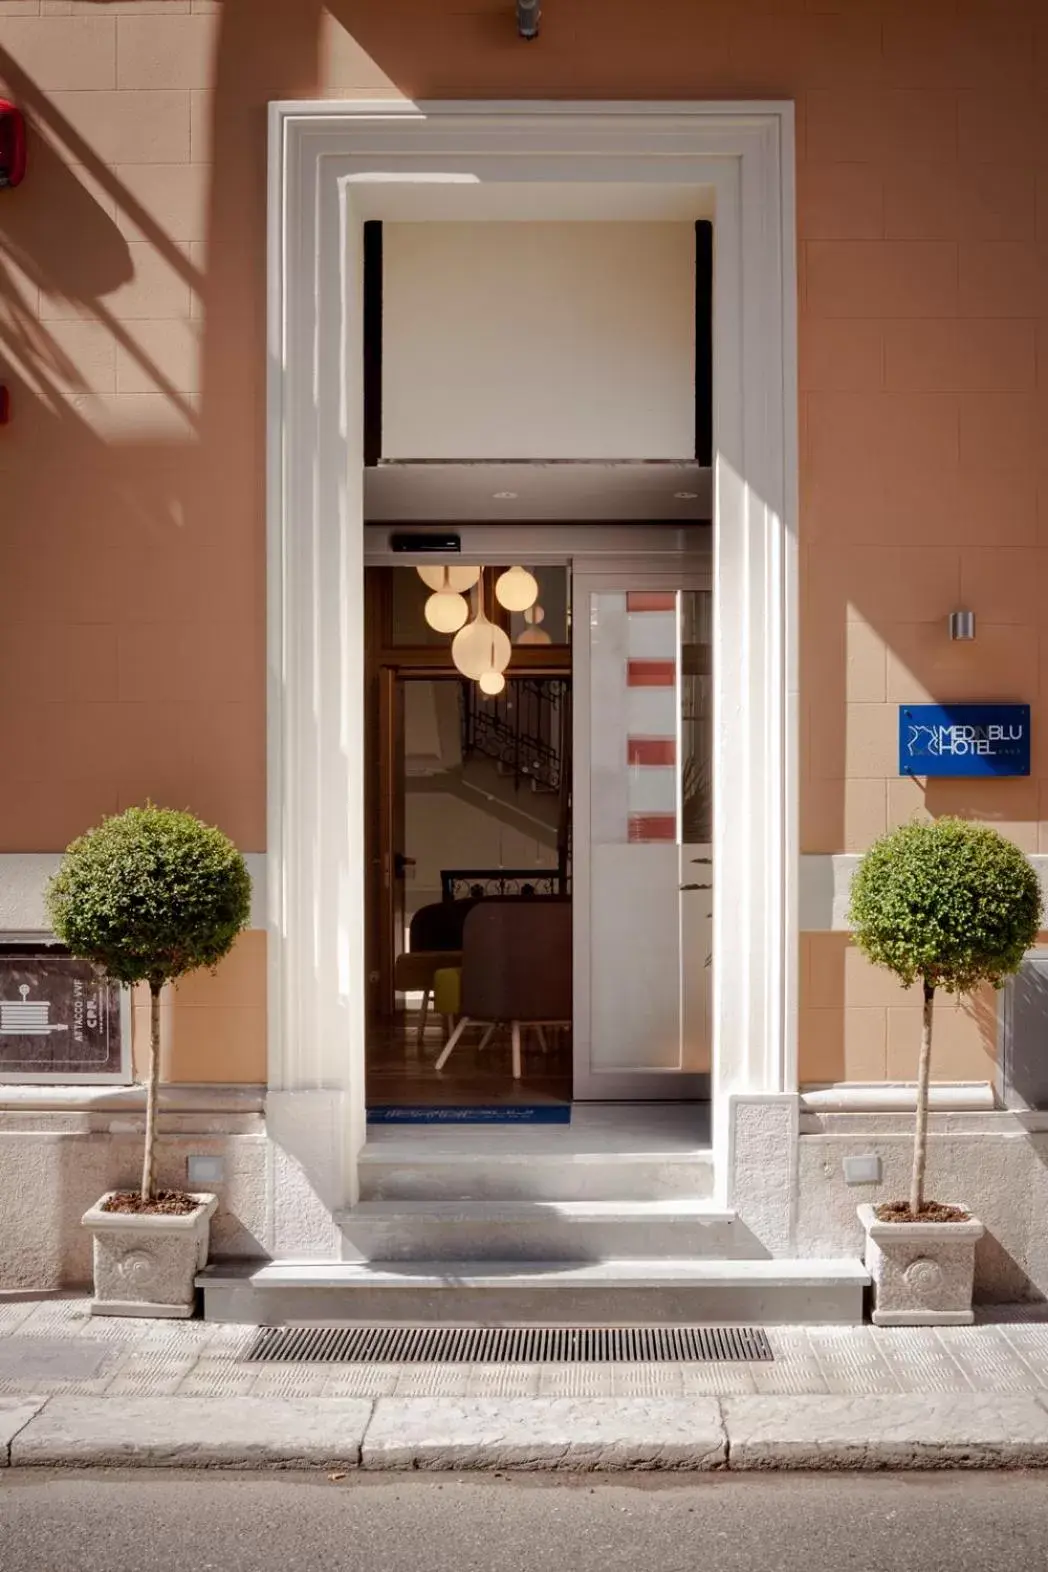 Facade/entrance in Hotel Medinblu